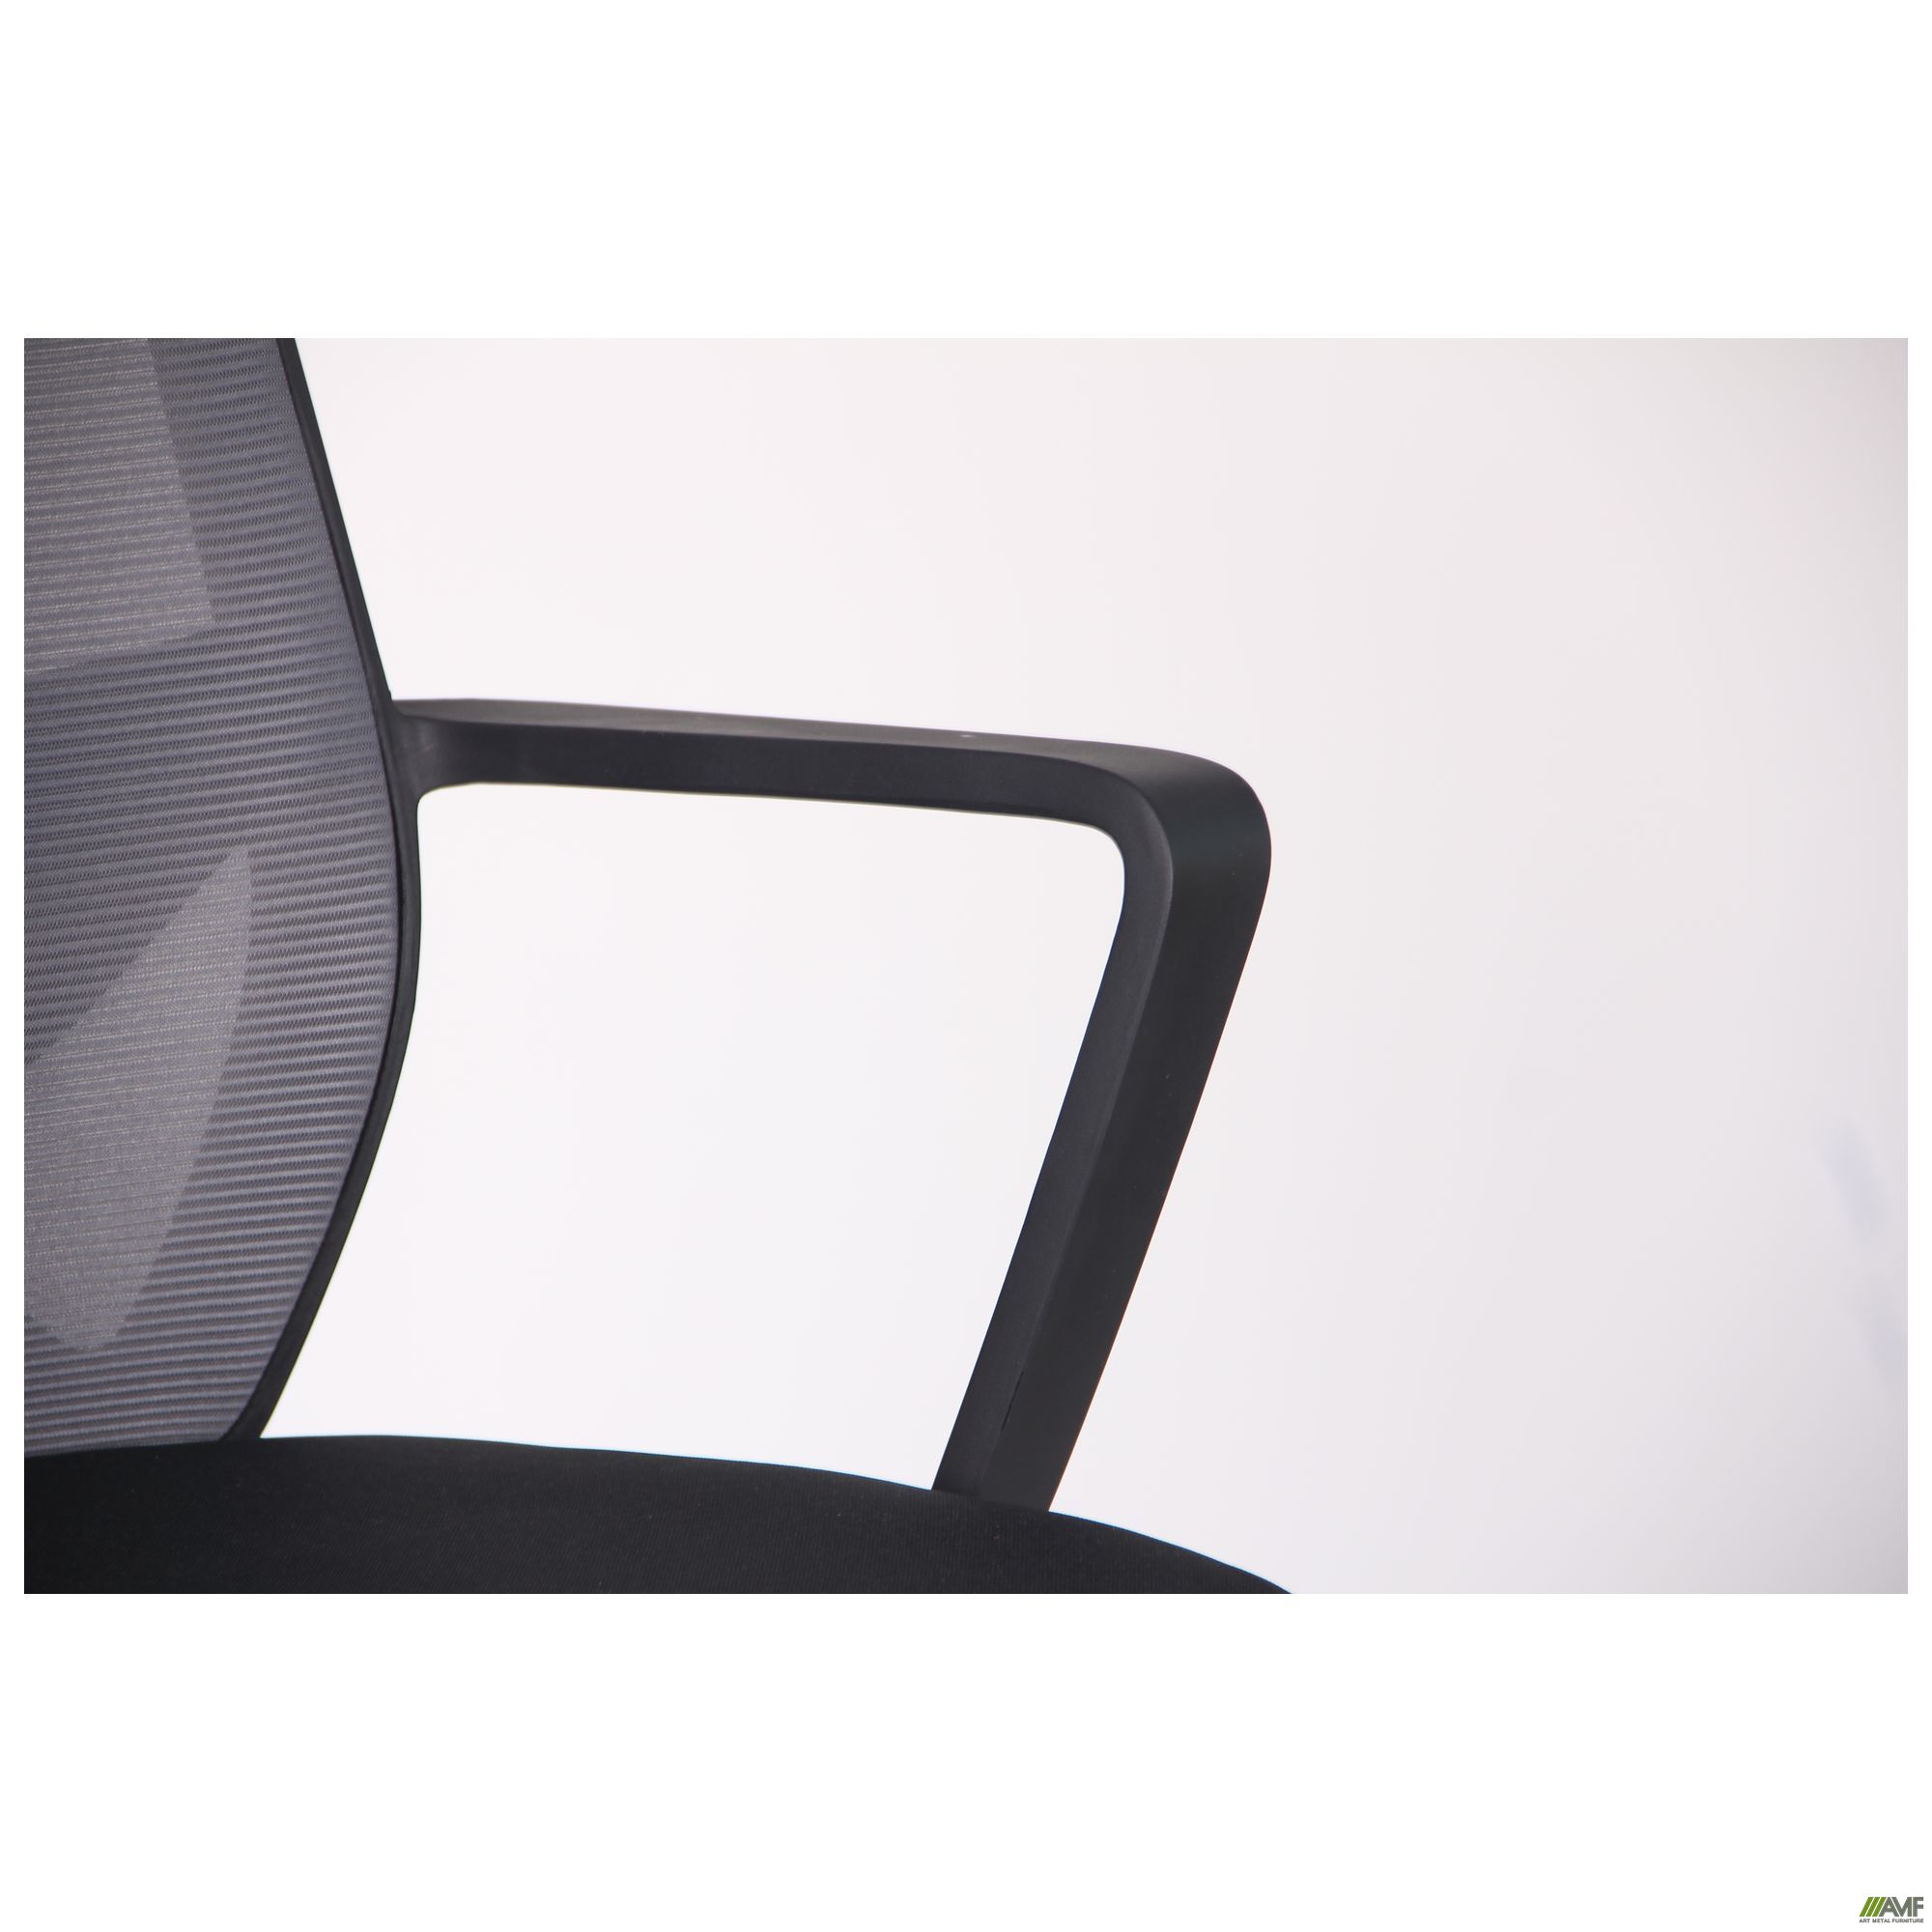 Фото 8 - Кресло Tin сиденье Саванна nova Black 19/спинка Сетка SL-16 серая 